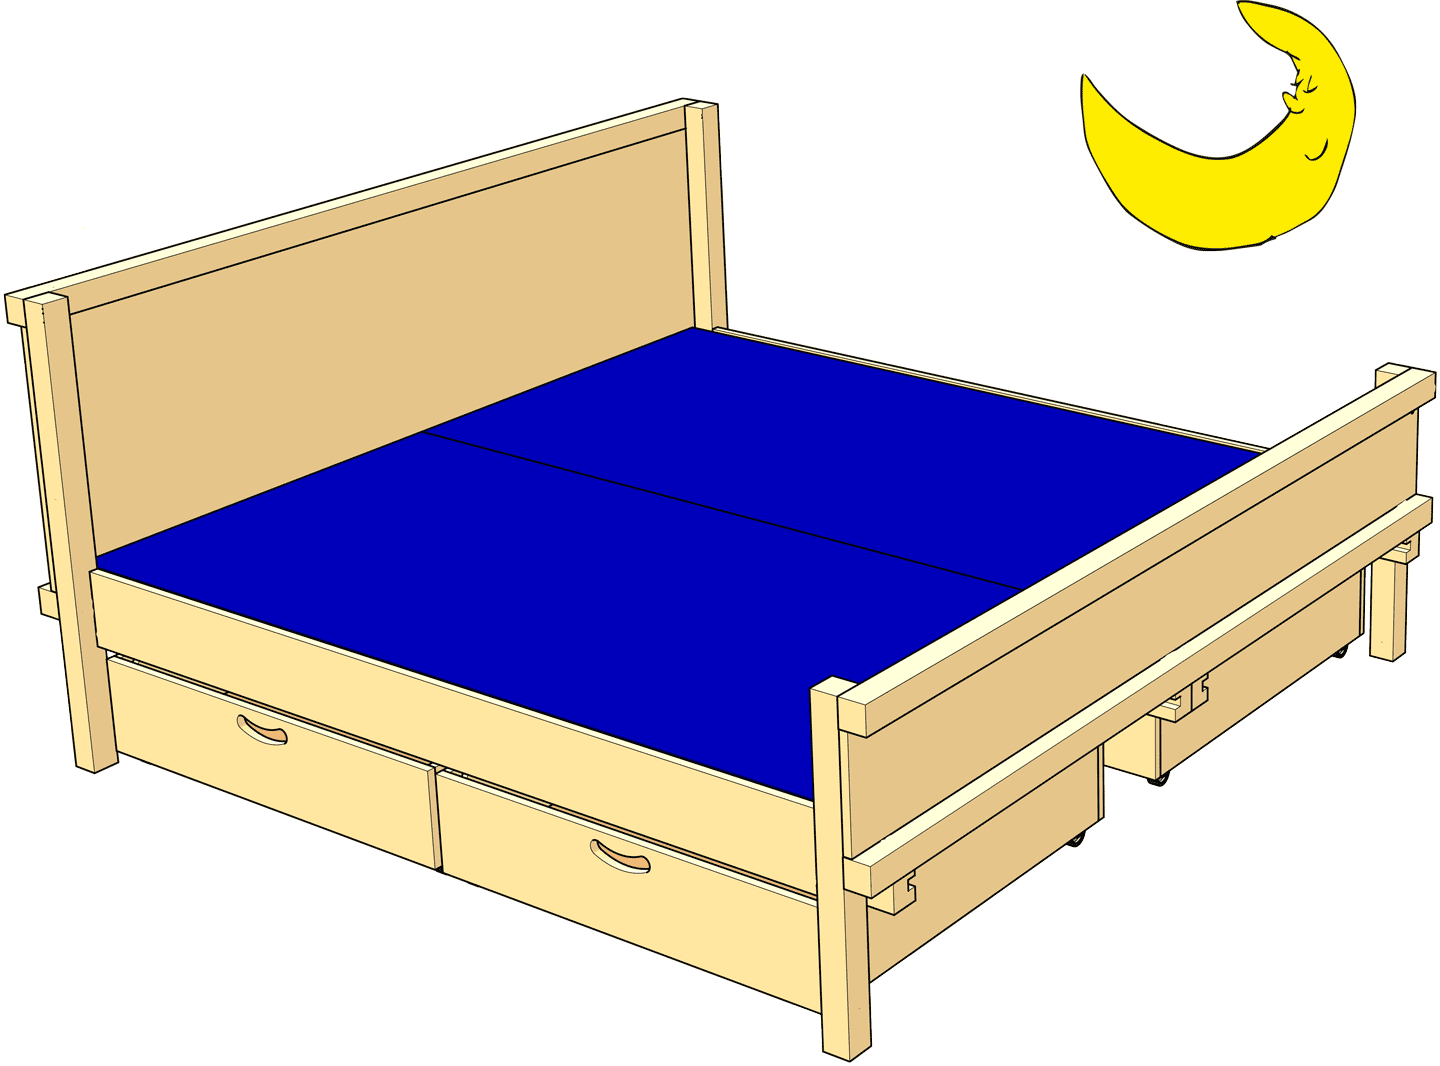 Eltern-Doppelbett, das Bett für Paare